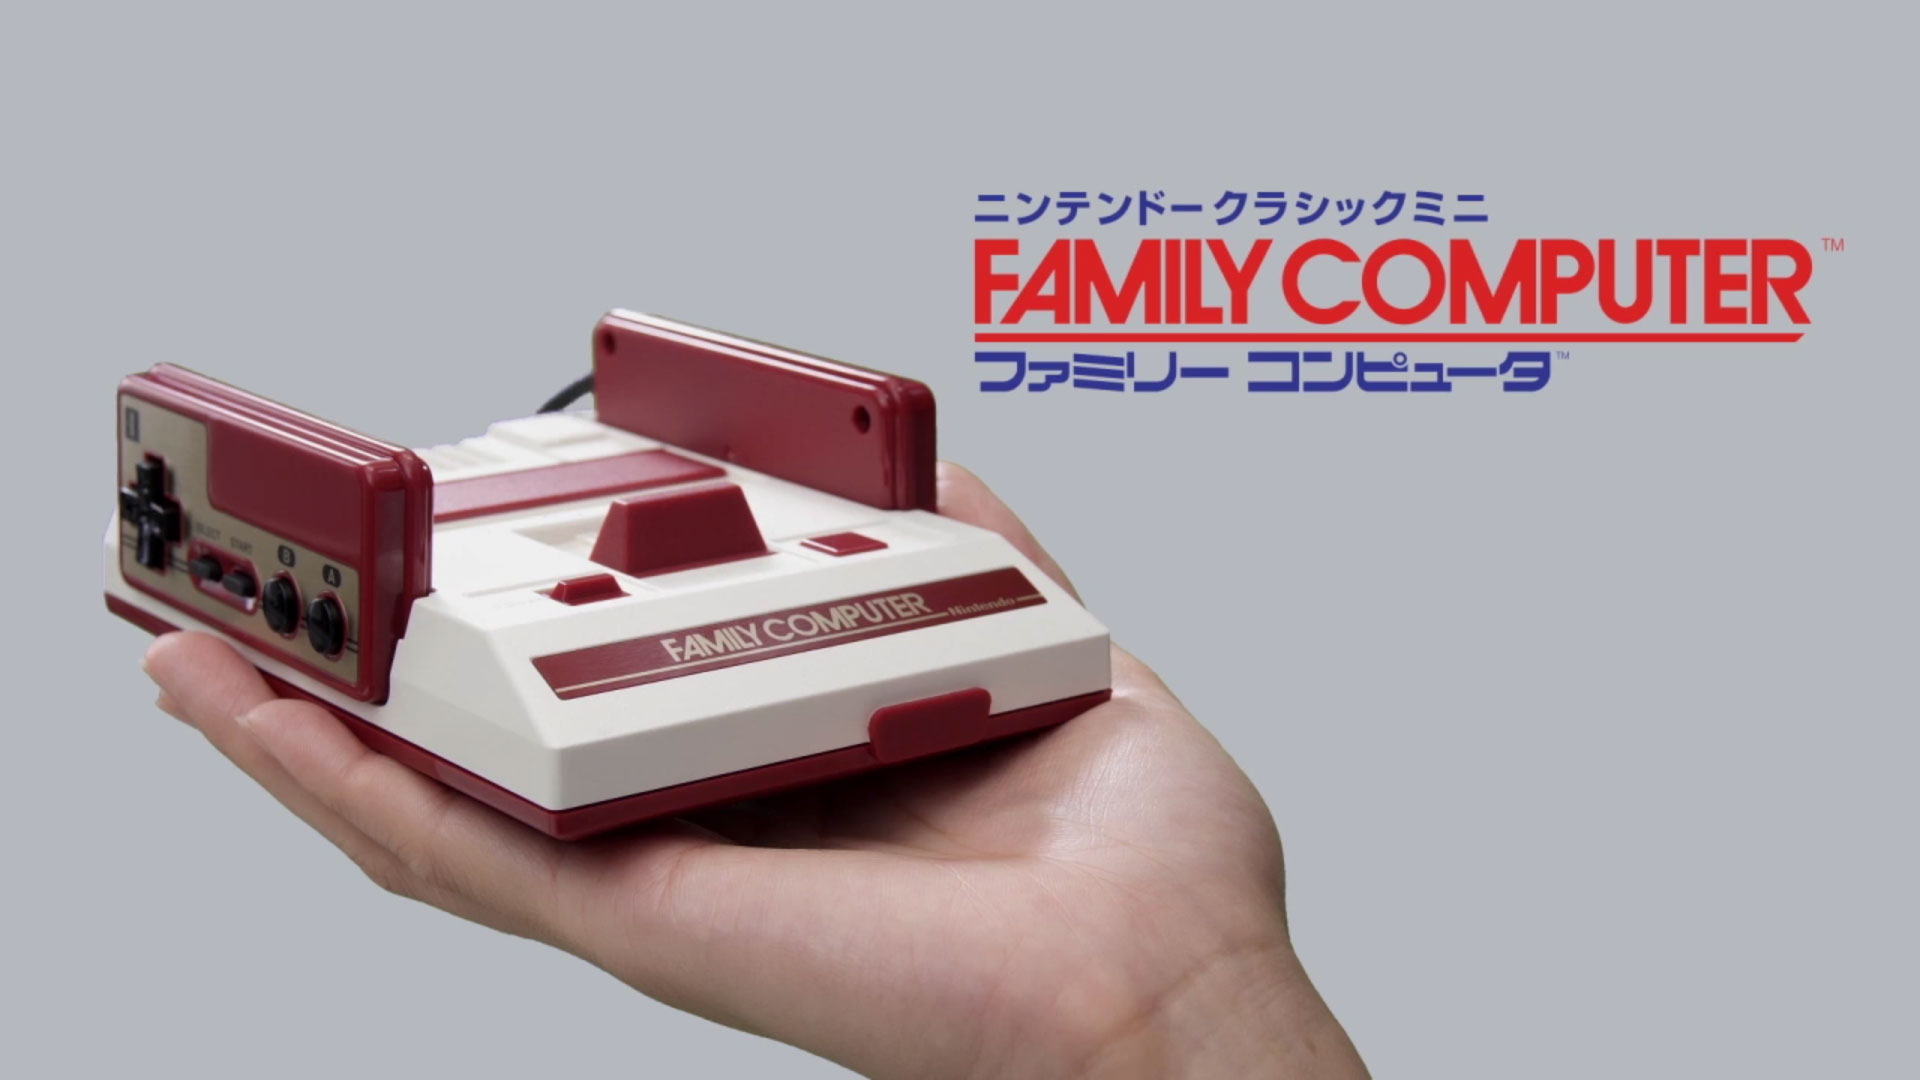 Il Nintendo Classic Mini Family Computer in uscita in Giappone